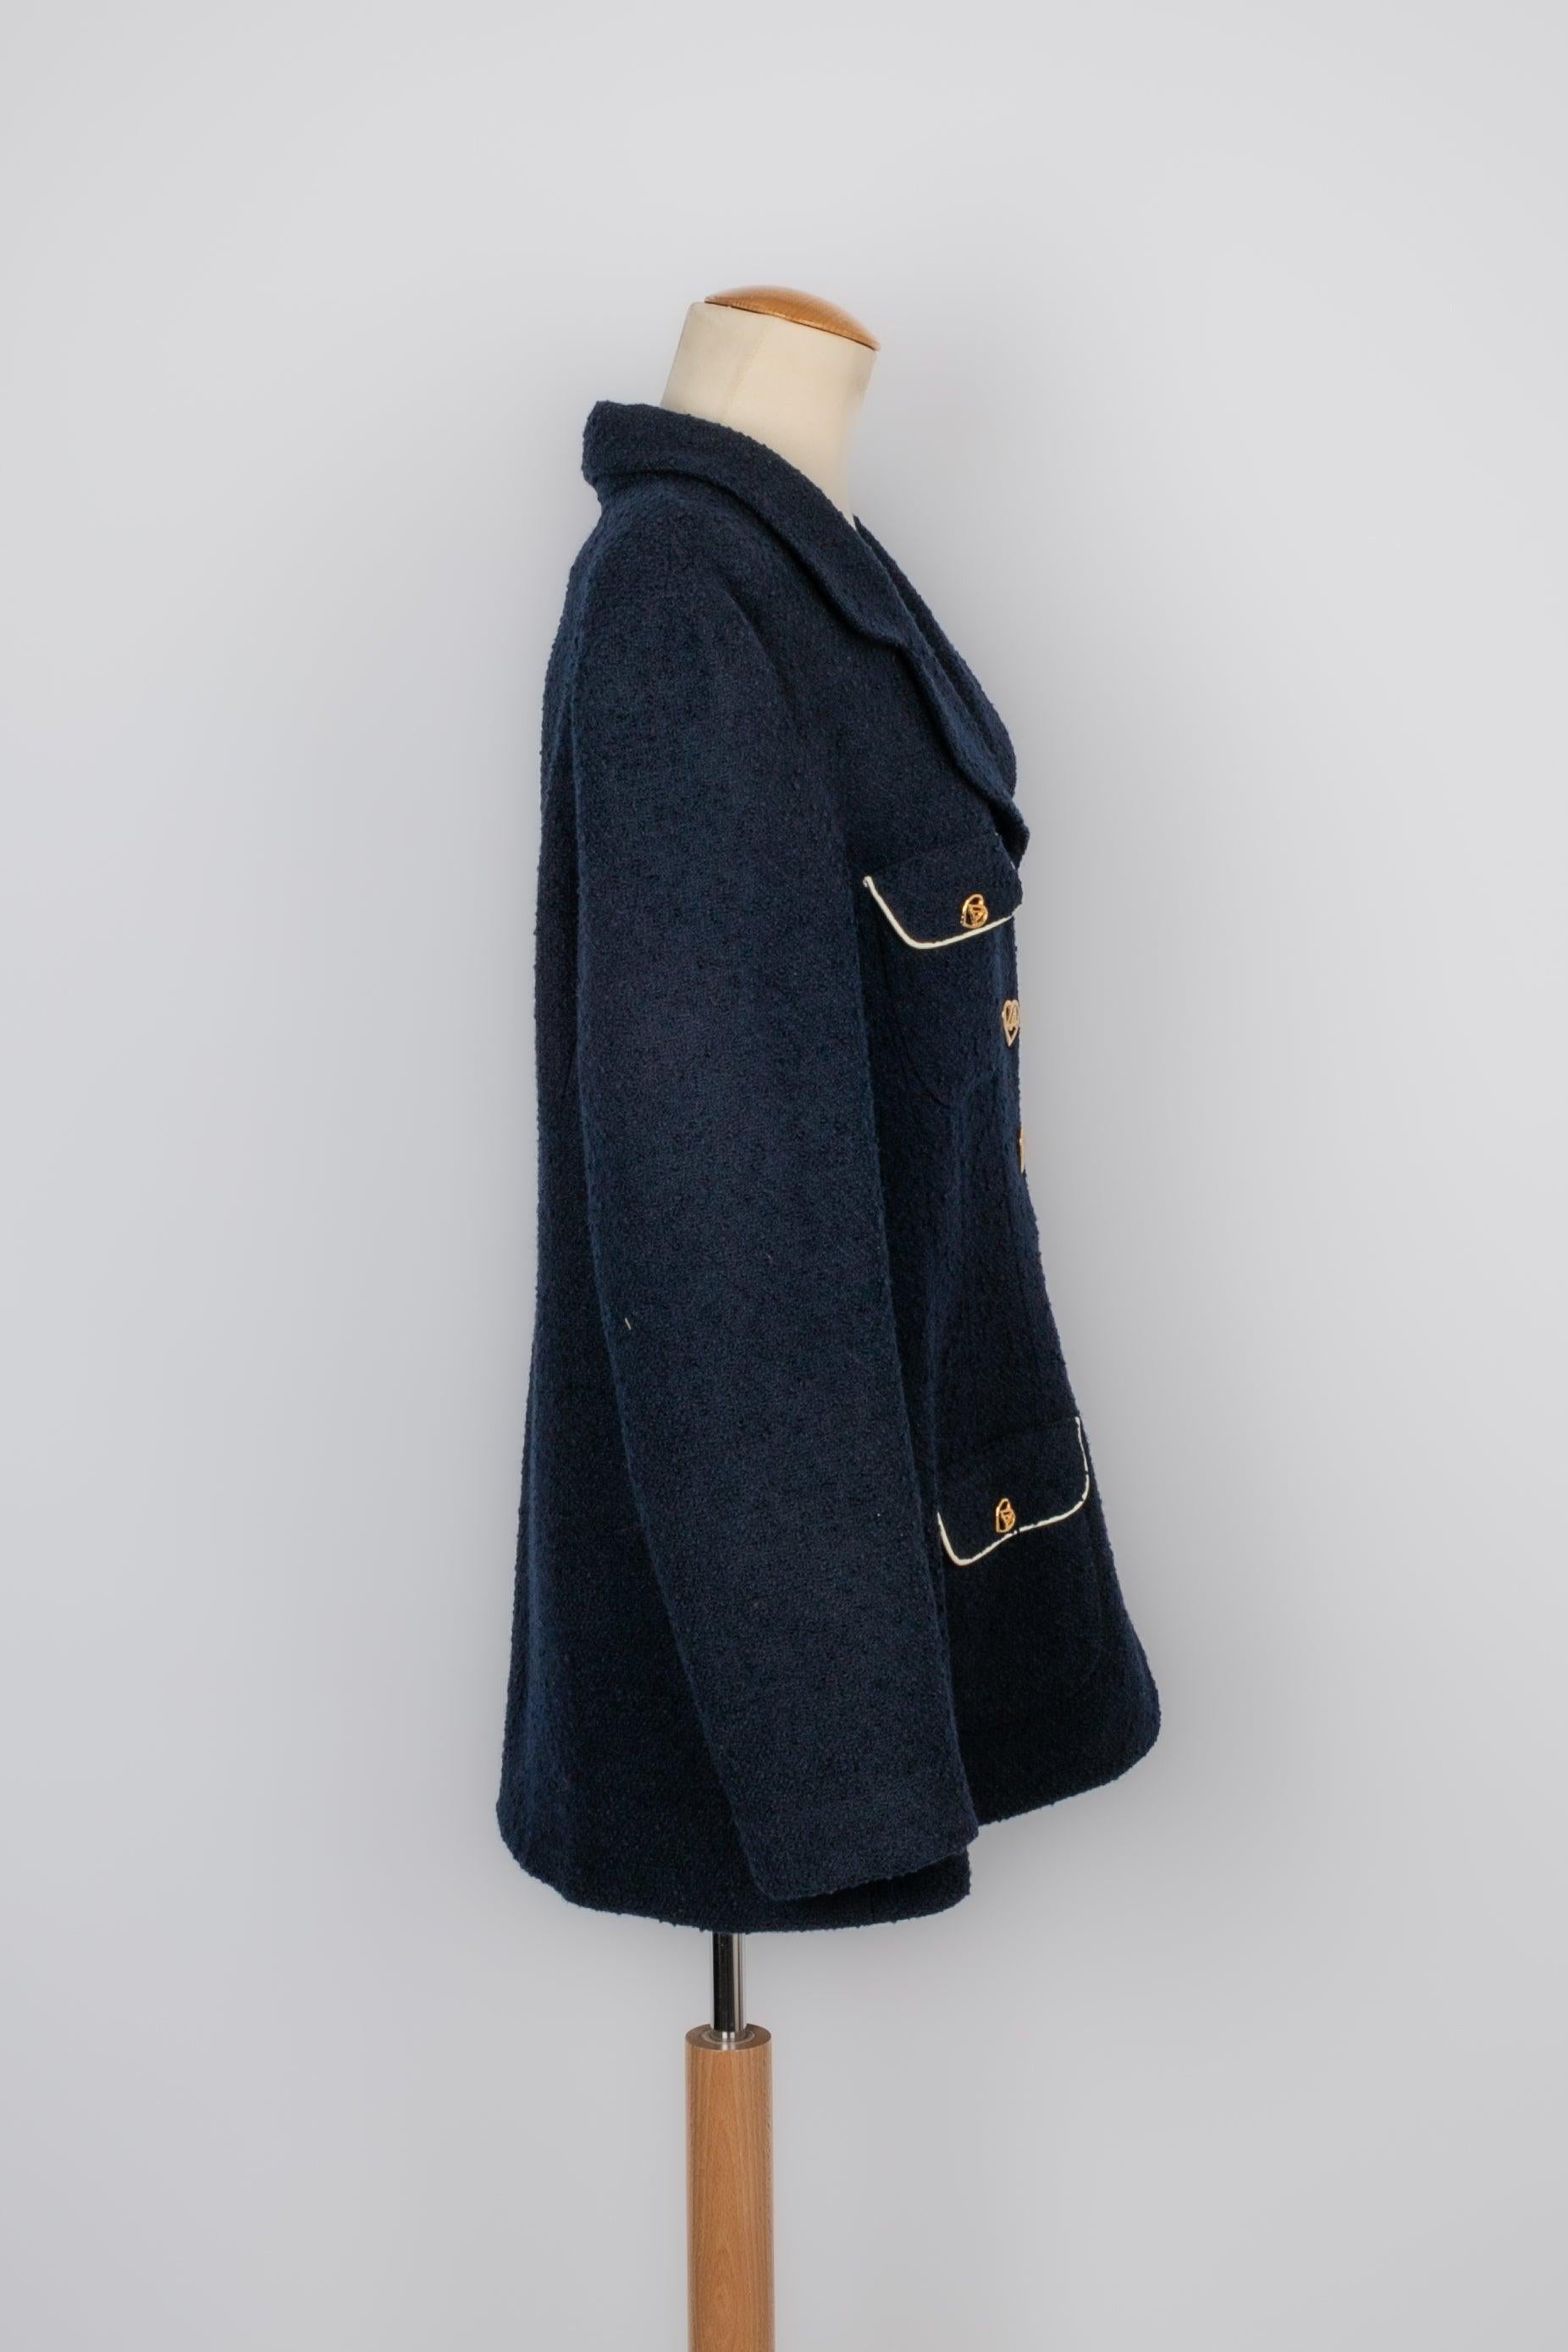 Azzaro - (Fabriqué en France) Veste en laine bleu marine et boutons en métal doré. Taille indiquée 4US.

Informations complémentaires :
Condit : Bon état
Dimensions : Largeur des épaules : 48 cm - Poitrine : 55 cm - Longueur des manches : 60 cm -